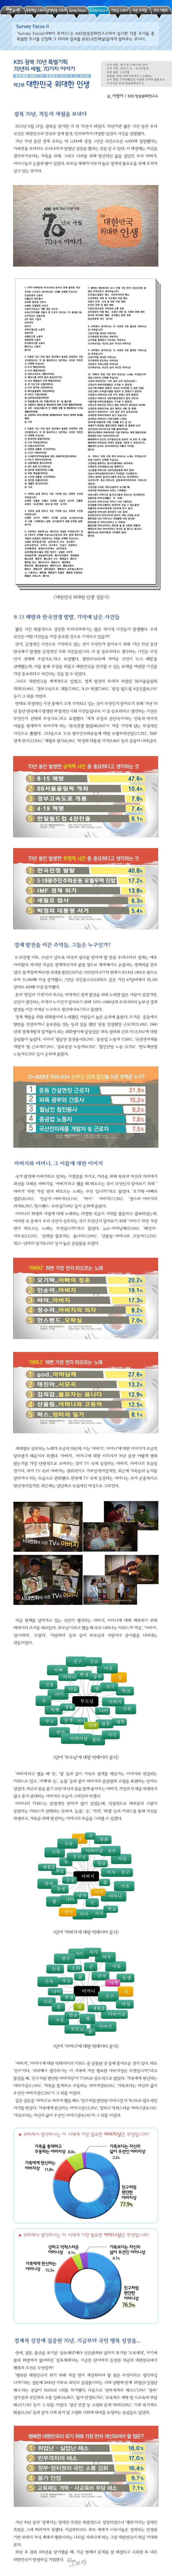 국민패널 - Survey Focus2